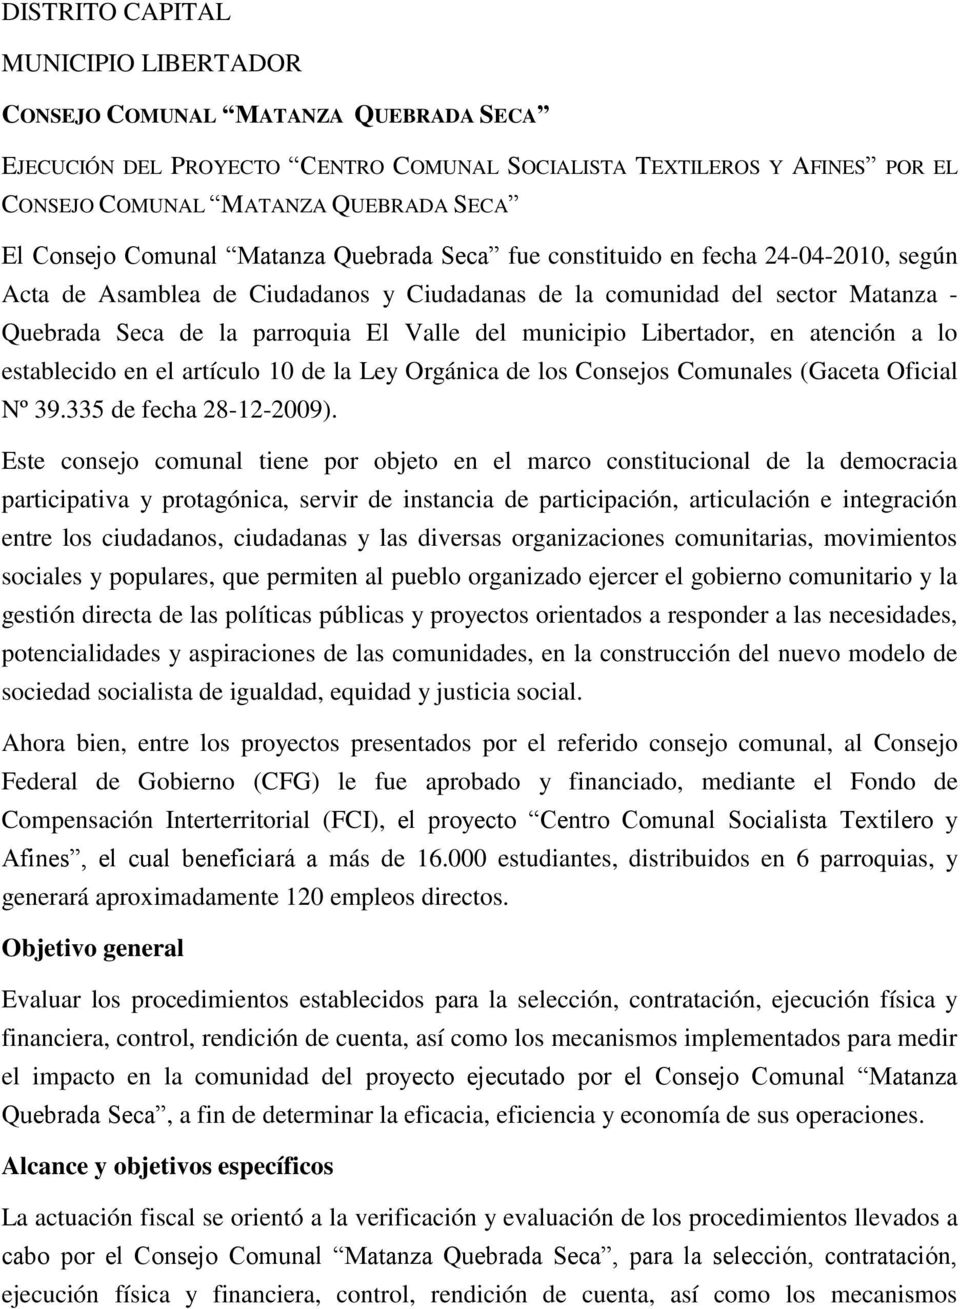 Valle del municipio Libertador, en atención a lo establecido en el artículo 10 de la Ley Orgánica de los Consejos Comunales (Gaceta Oficial Nº 39.335 de fecha 28-12-2009).